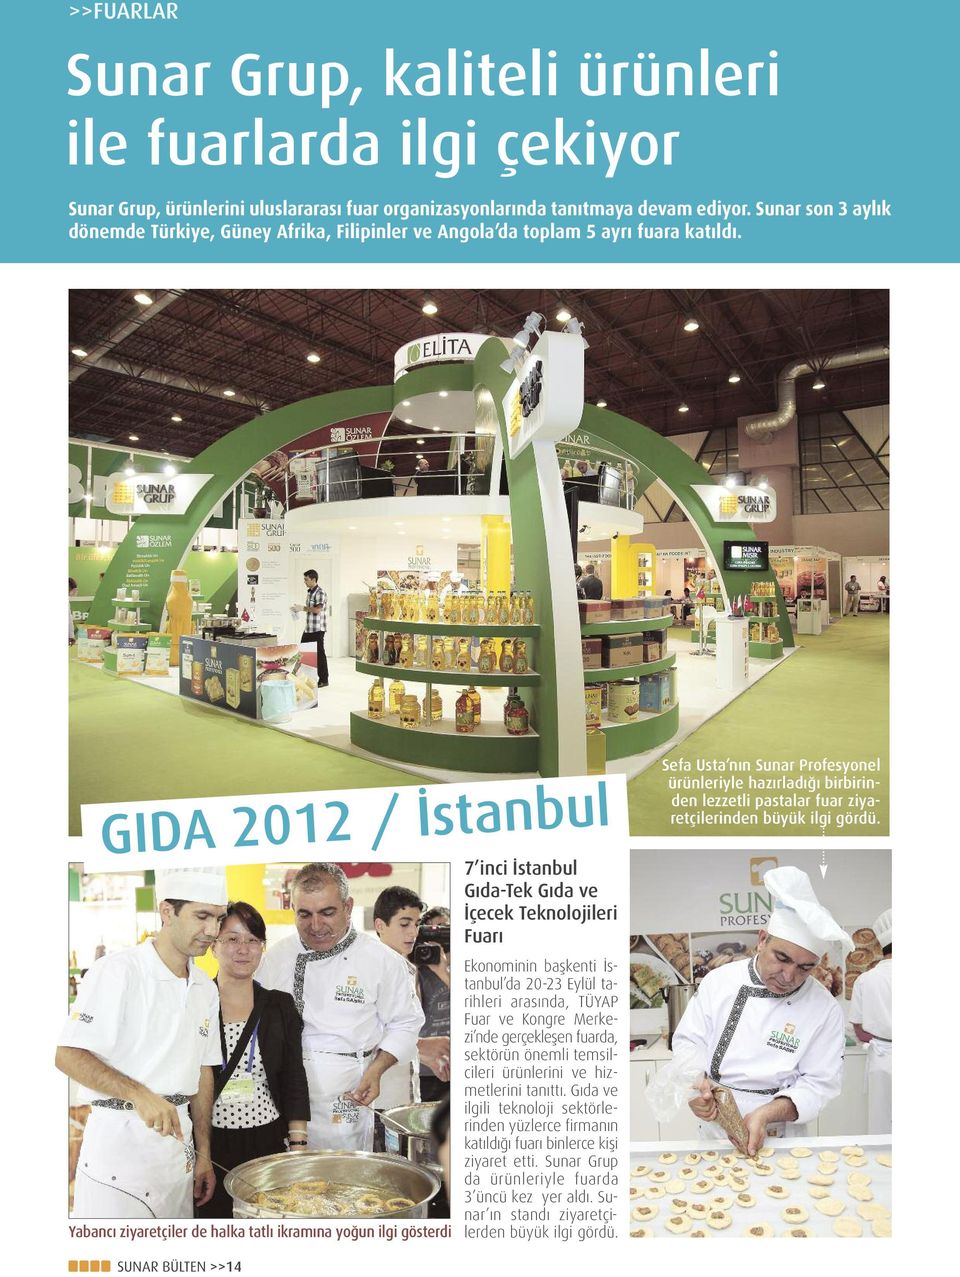 GIDA 2012 / İstanbul Yabancı ziyaretçiler de halka tatlı ikramına yoğun ilgi gösterdi 7 inci İstanbul Gıda-Tek Gıda ve İçecek Teknolojileri Fuarı Ekonominin başkenti İstanbul da 20-23 Eylül tarihleri